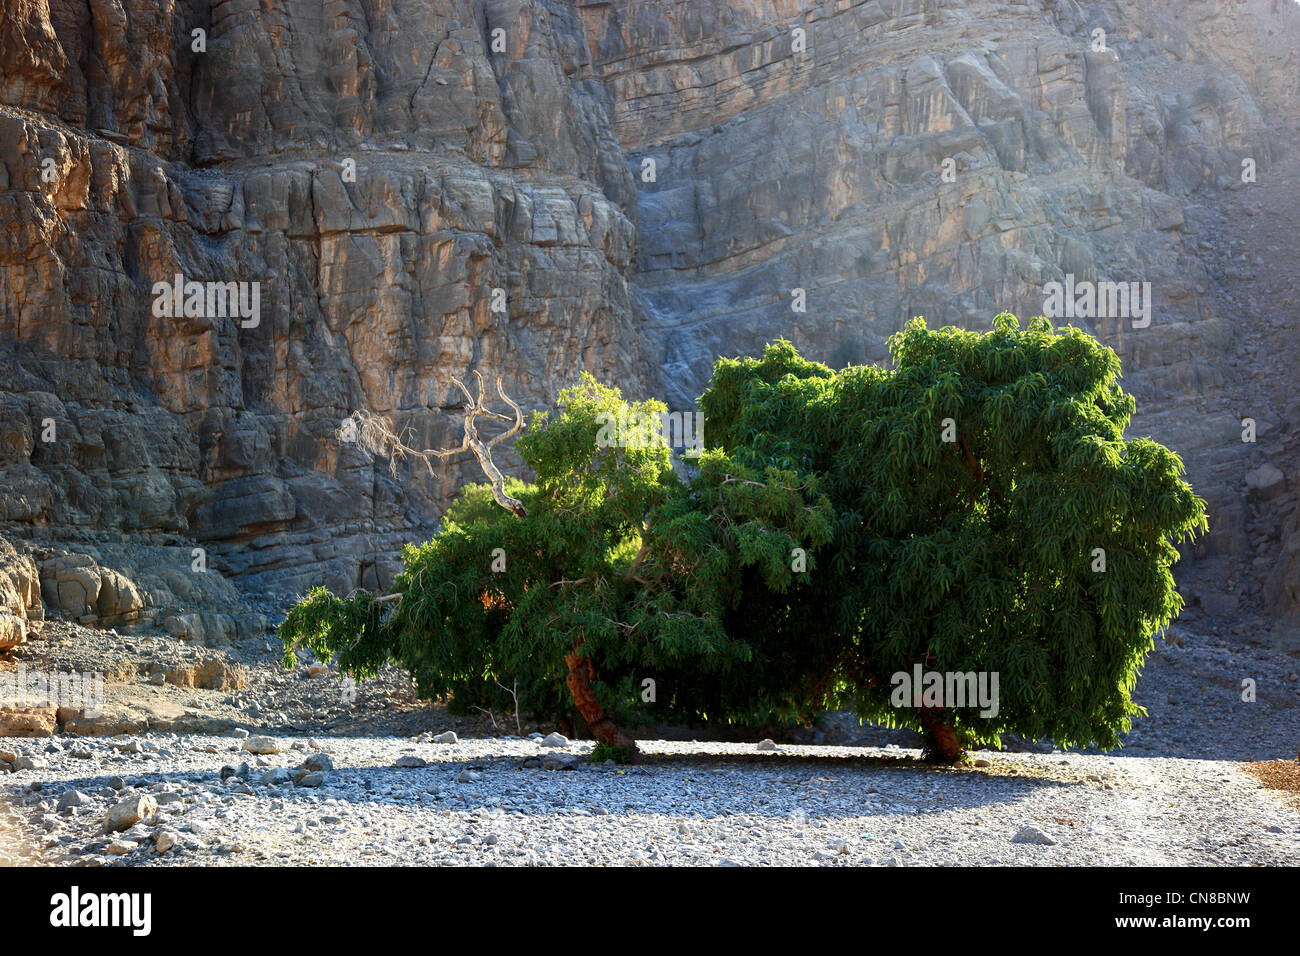 Landschaft im Jebel Harim Gebiet,, in der omanischen Enklave Musandam, Oman Stock Photo